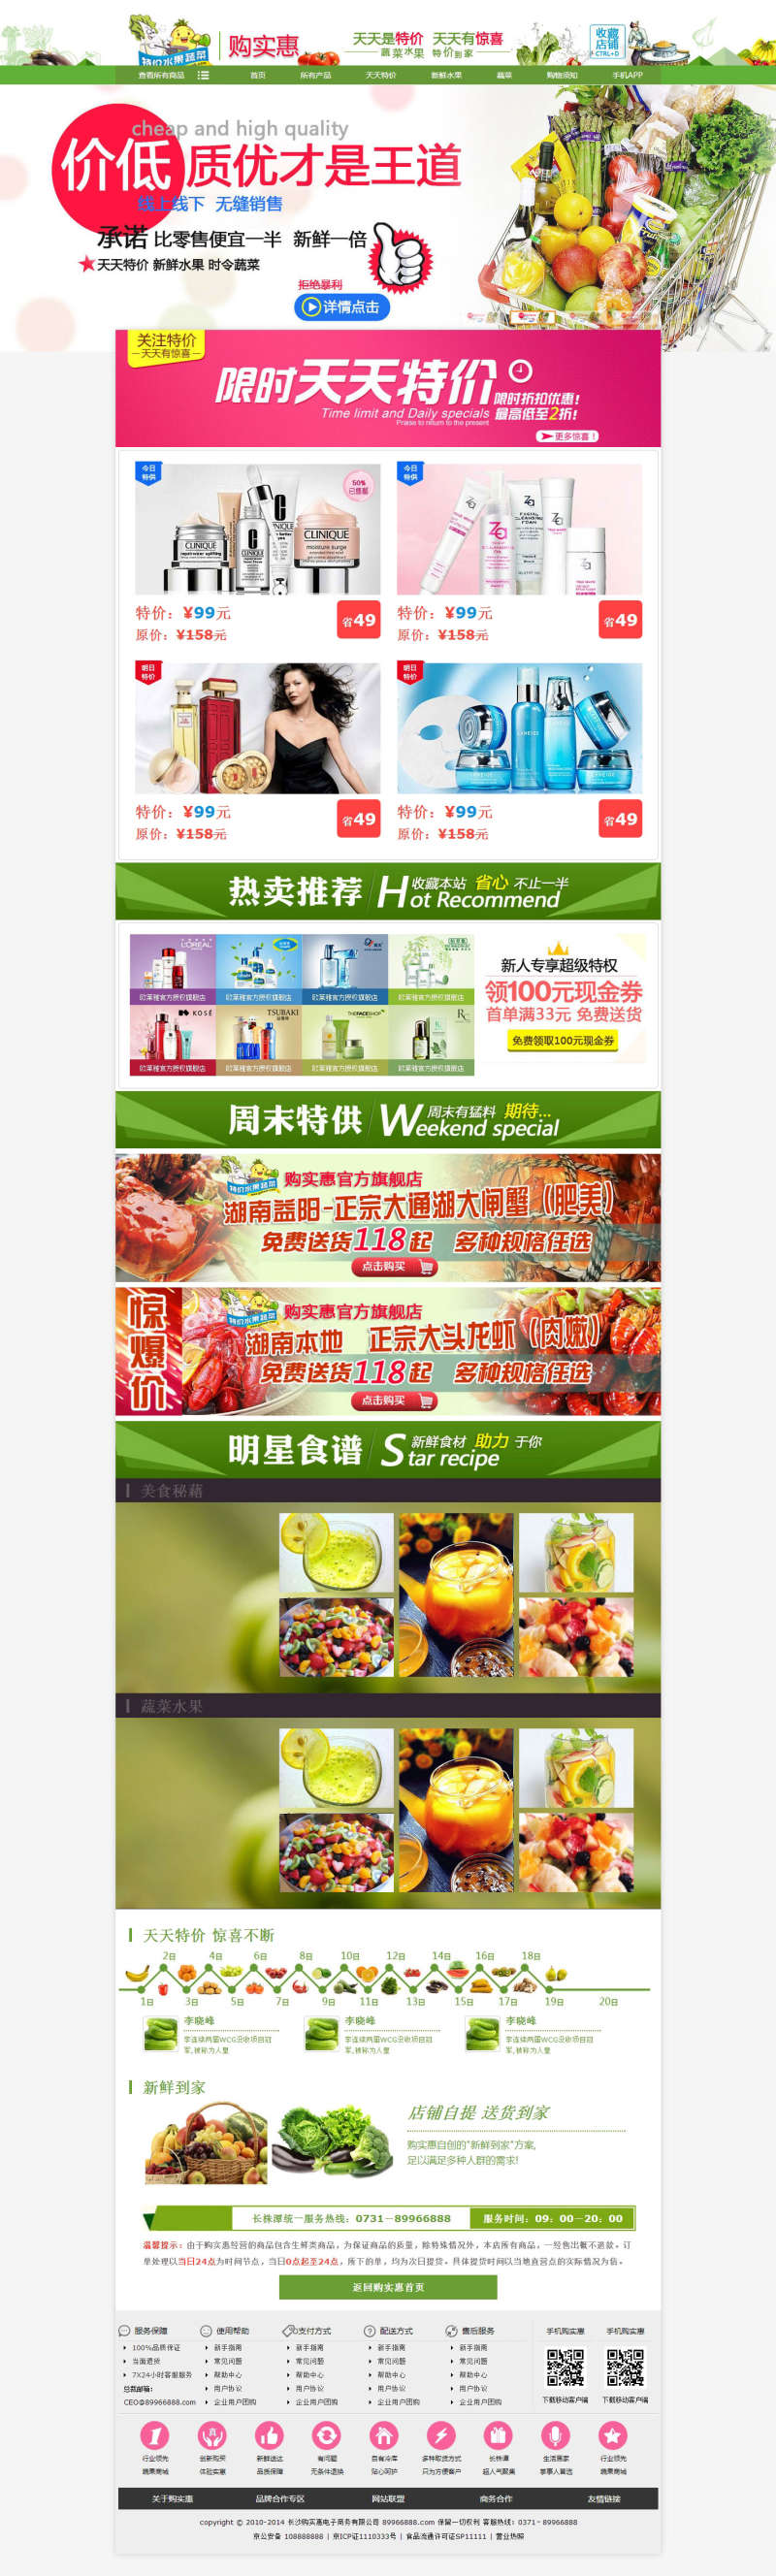 蔬菜商城网站模板html下载(图1)